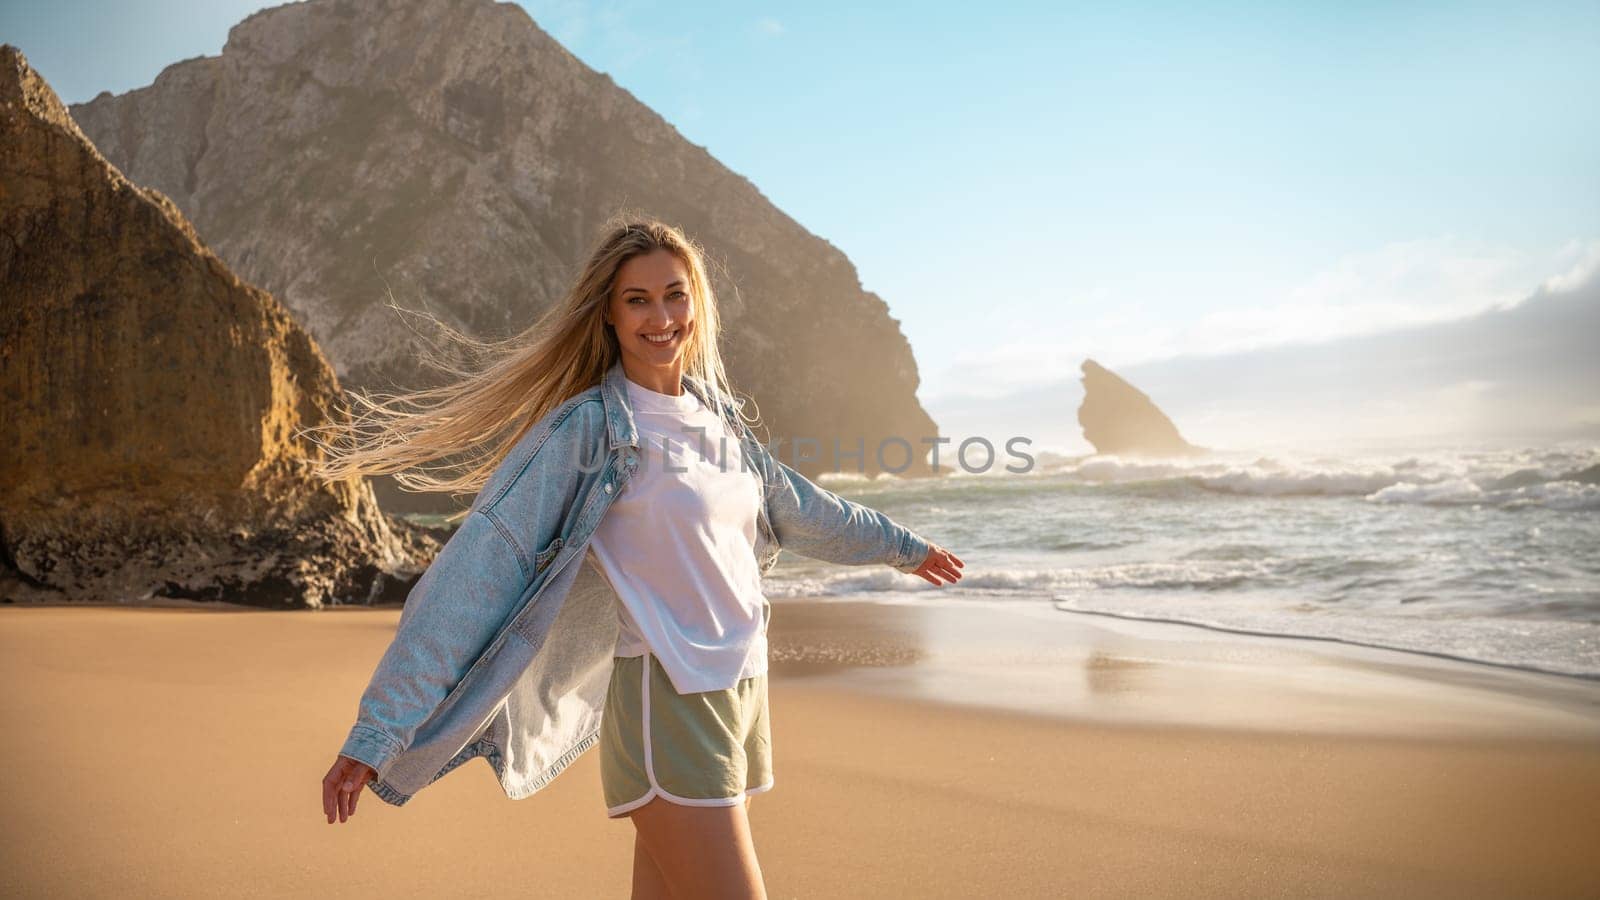 Woman on beach near rocks by andreonegin